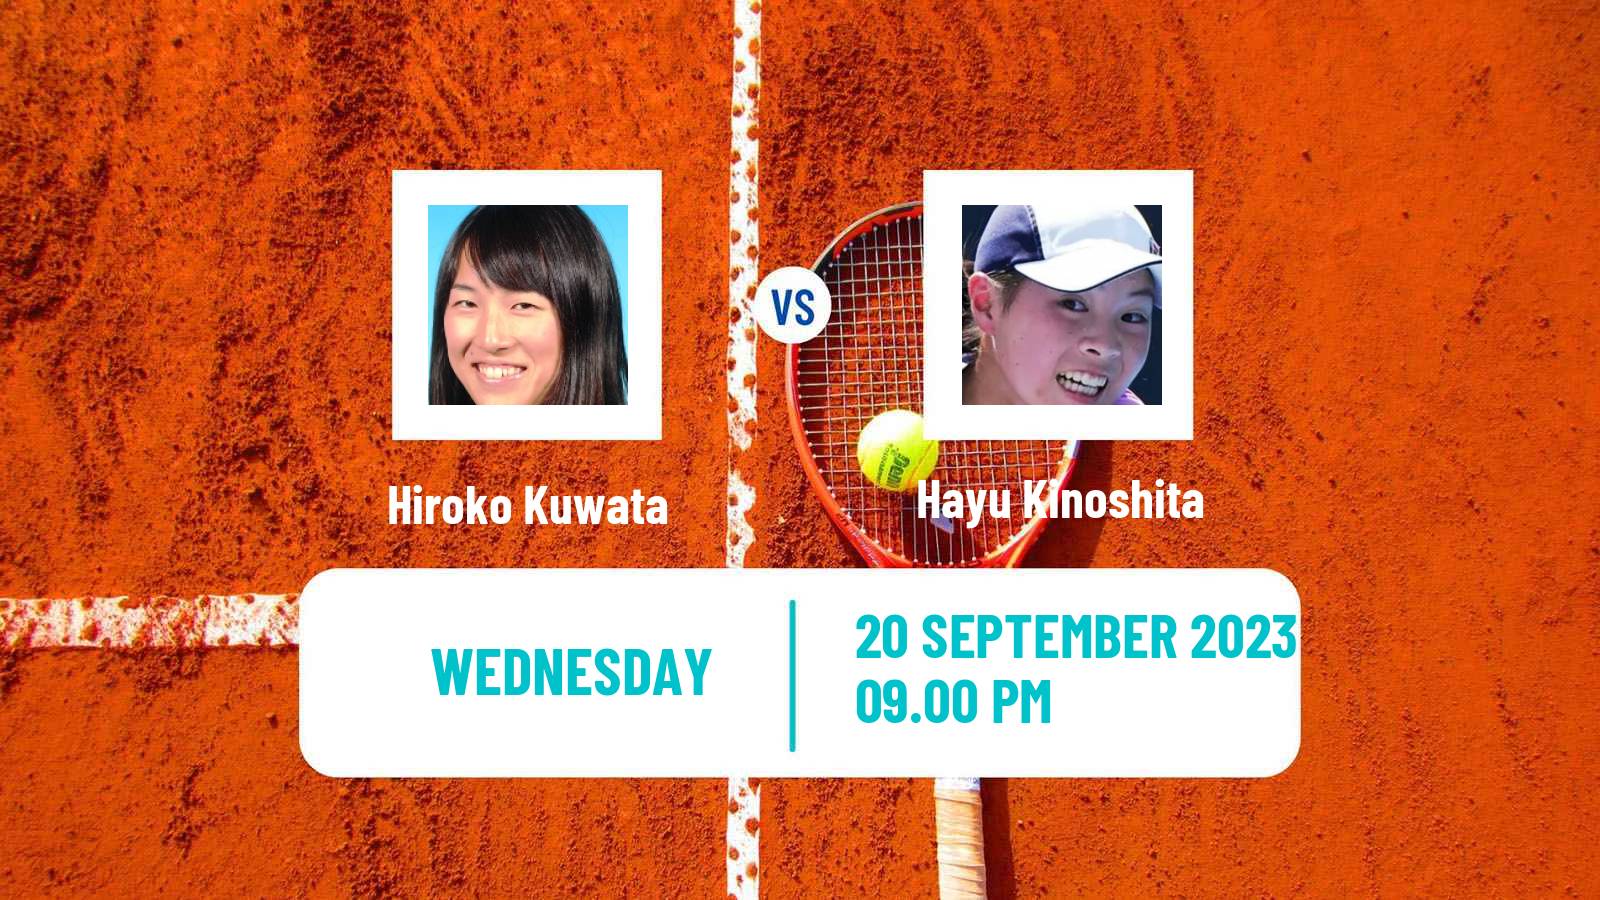 Tennis ITF W25 Kyoto Women Hiroko Kuwata - Hayu Kinoshita